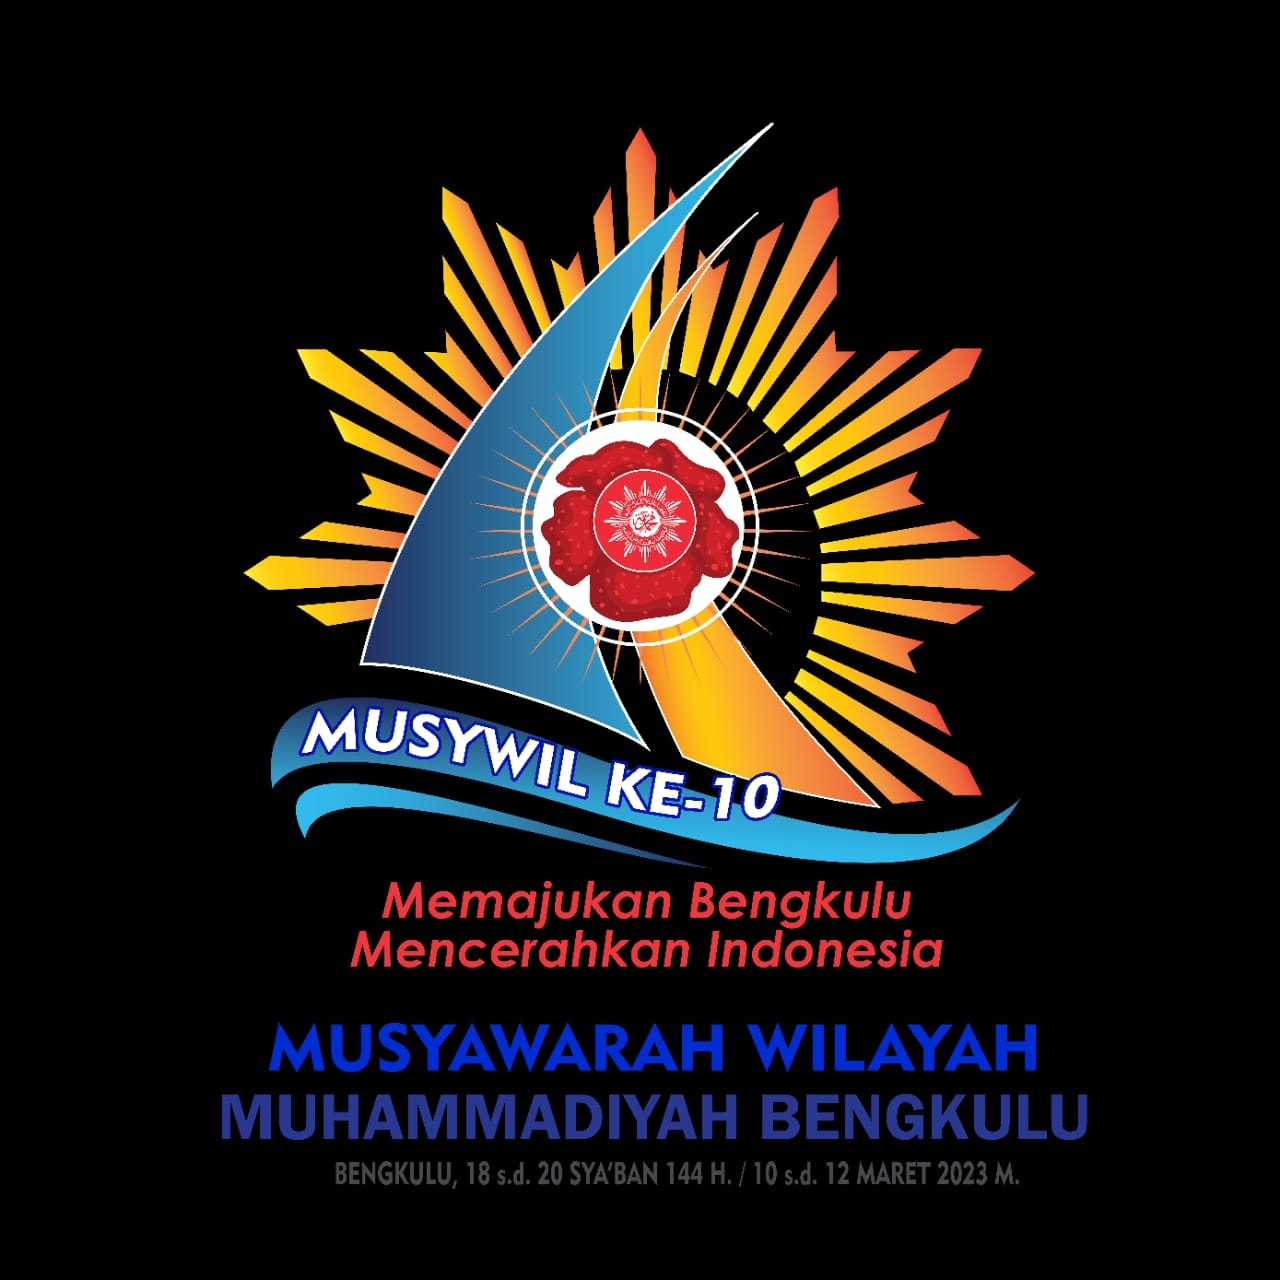  Infonya, Ada Ketua Partai Daftar Calon Pimpinan Wilayah Muhammadiyah Bengkulu, Bolehkah?